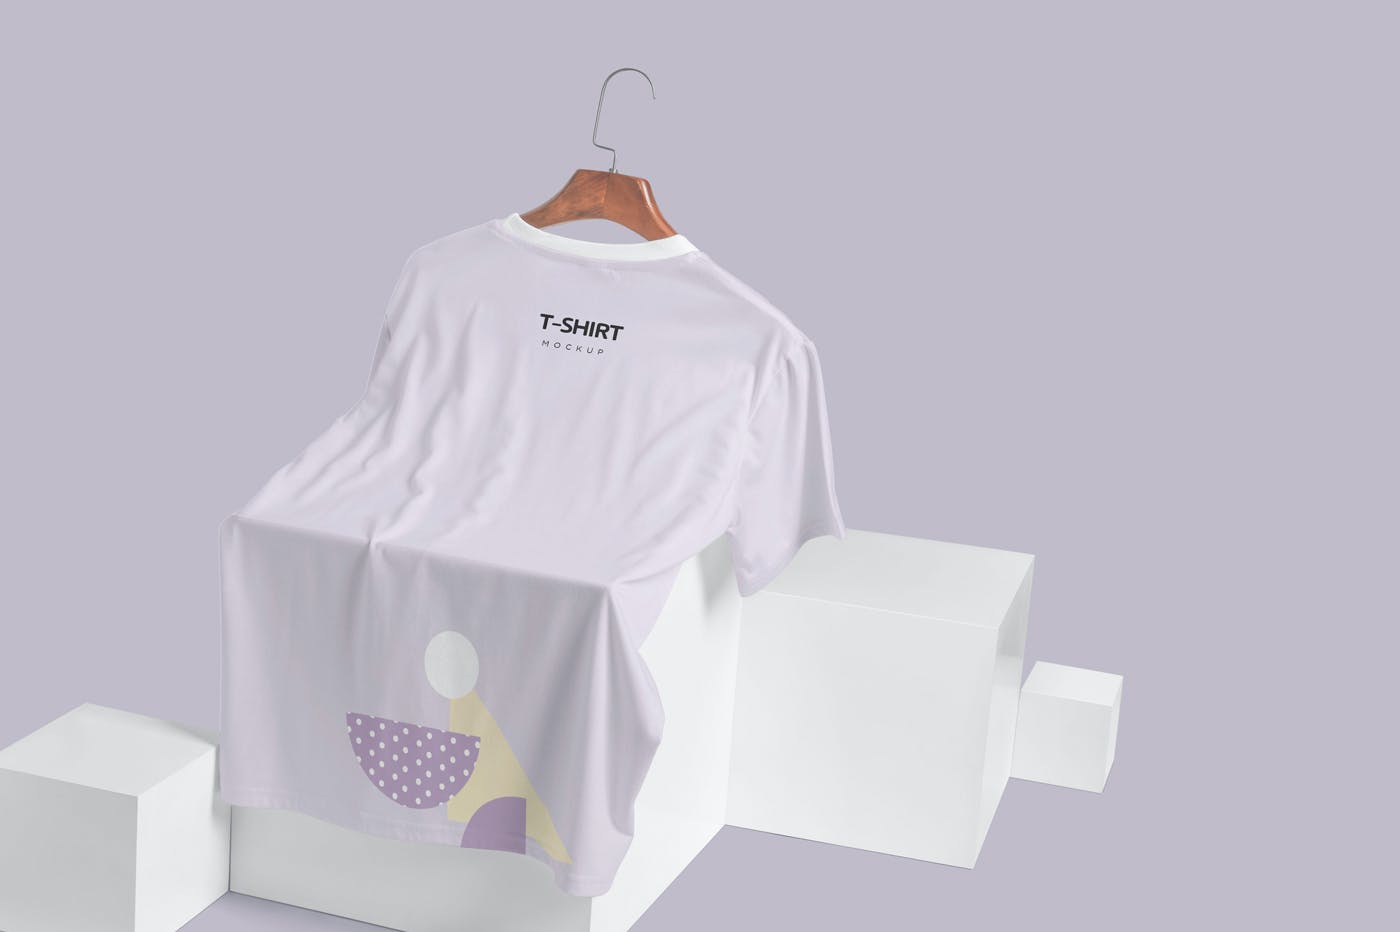 圆领口袋T恤效果图展示样机模板 Half Sleeves Crew Neck Pocket T-shirt Mockups设计素材模板